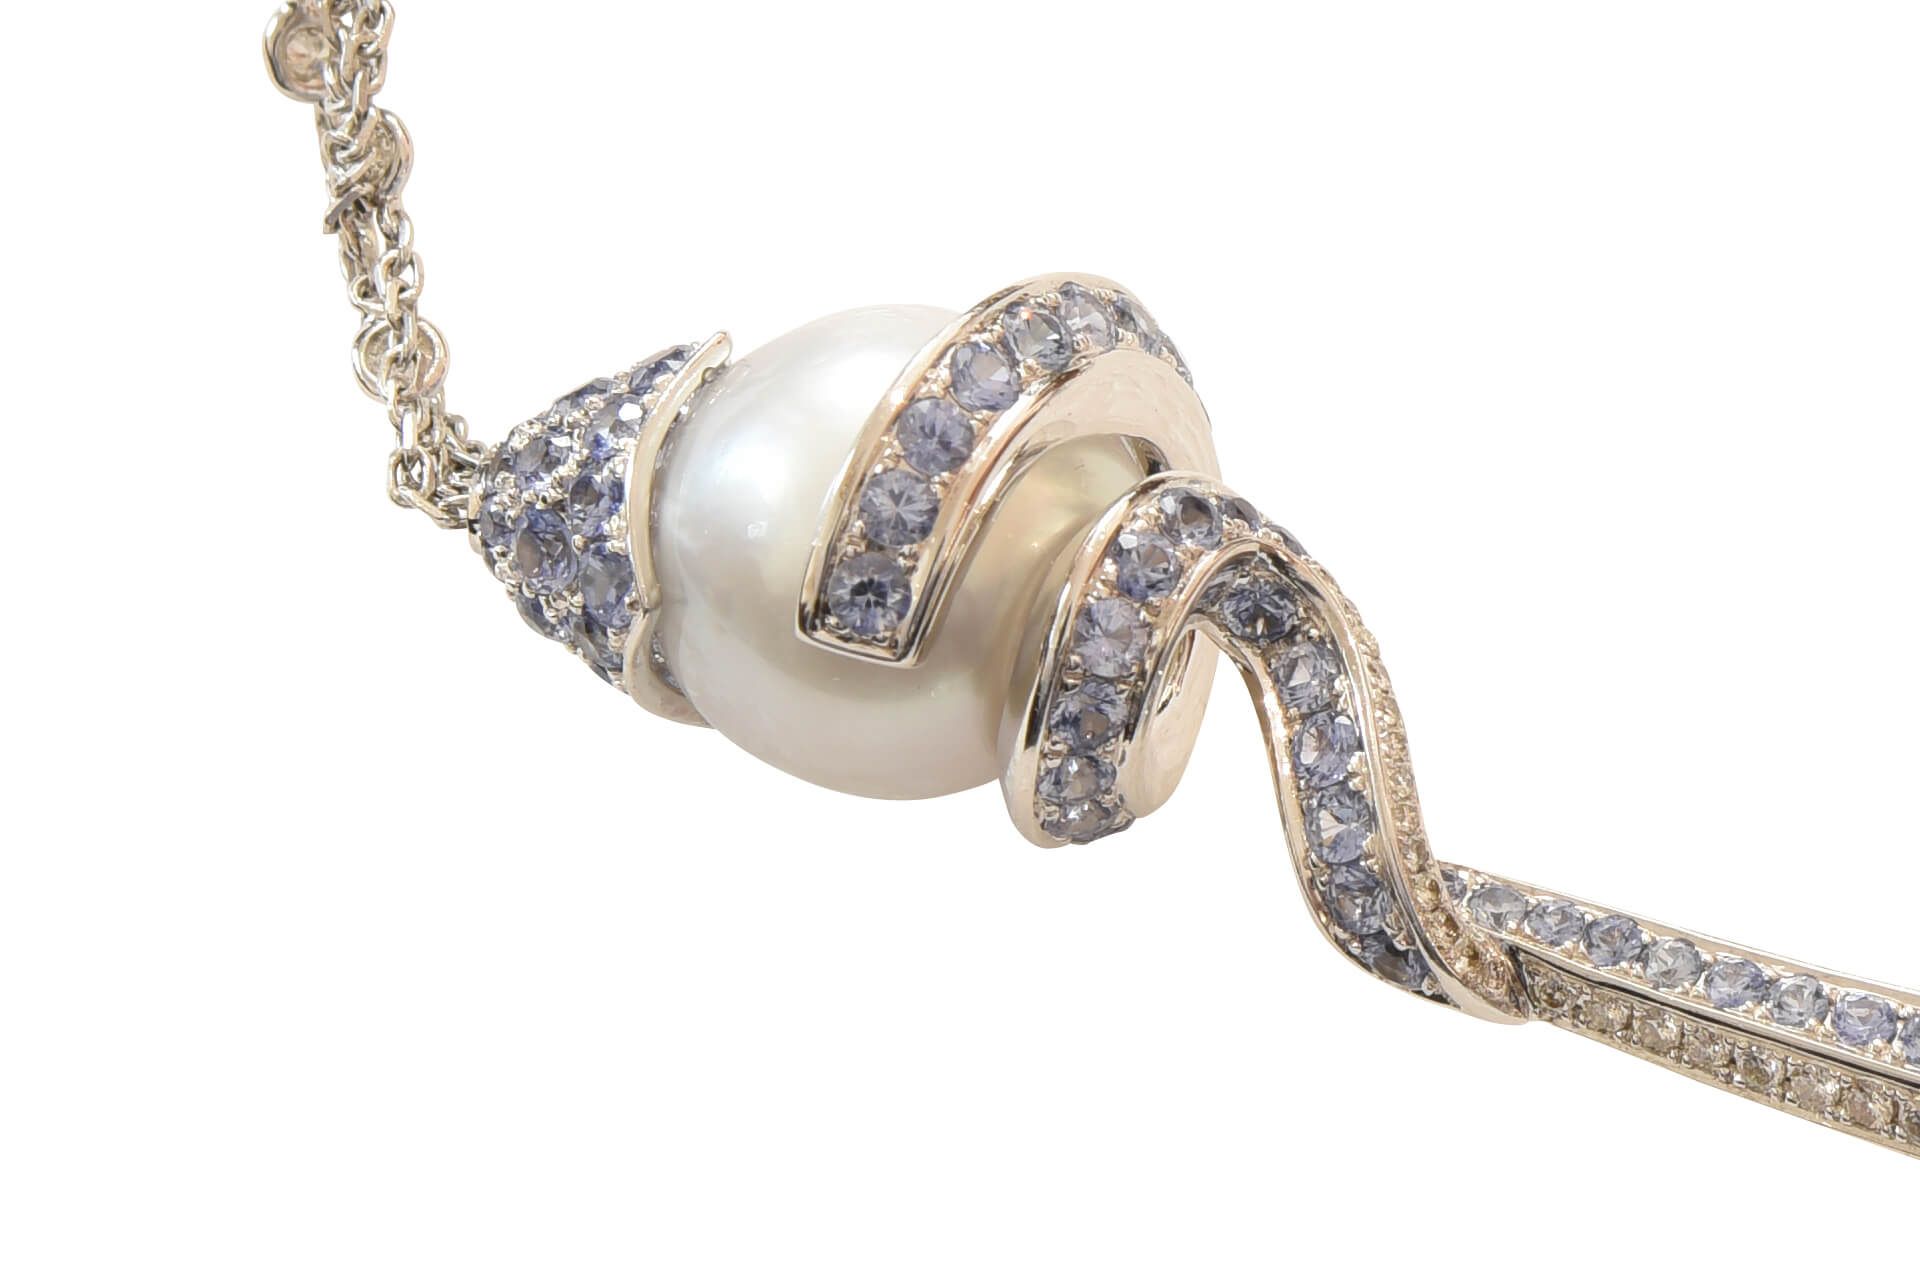 Collier WG mit Brillanten, Saphire, und Perlen|Necklace with Diamonds, Sapphires, & Pearls - Image 6 of 6